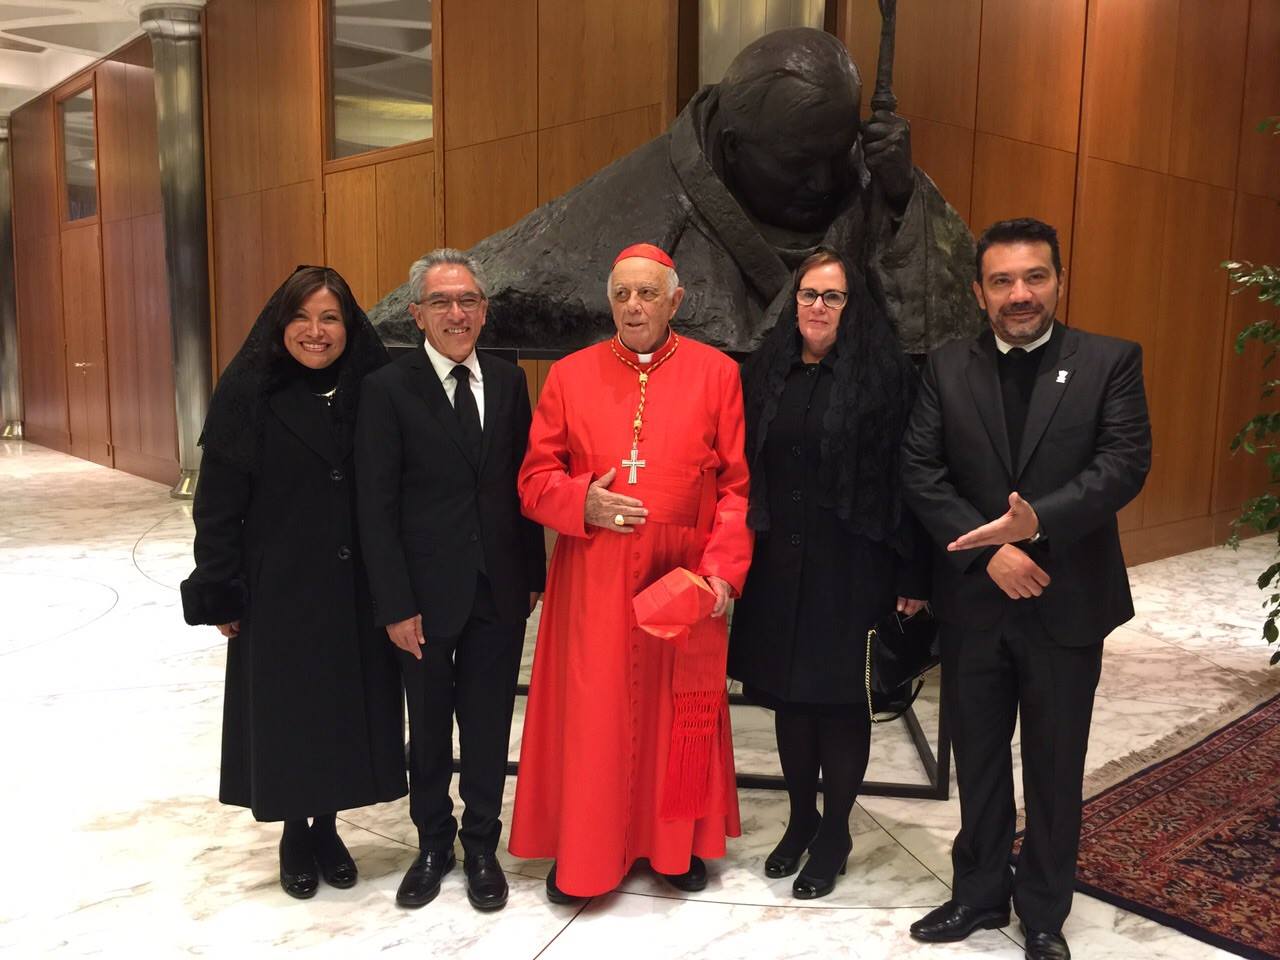 viaje a El Vaticano Georgina Morales, Salvador Jara, Suárez Inda, Catherine Ettinger y Roberto Monroy